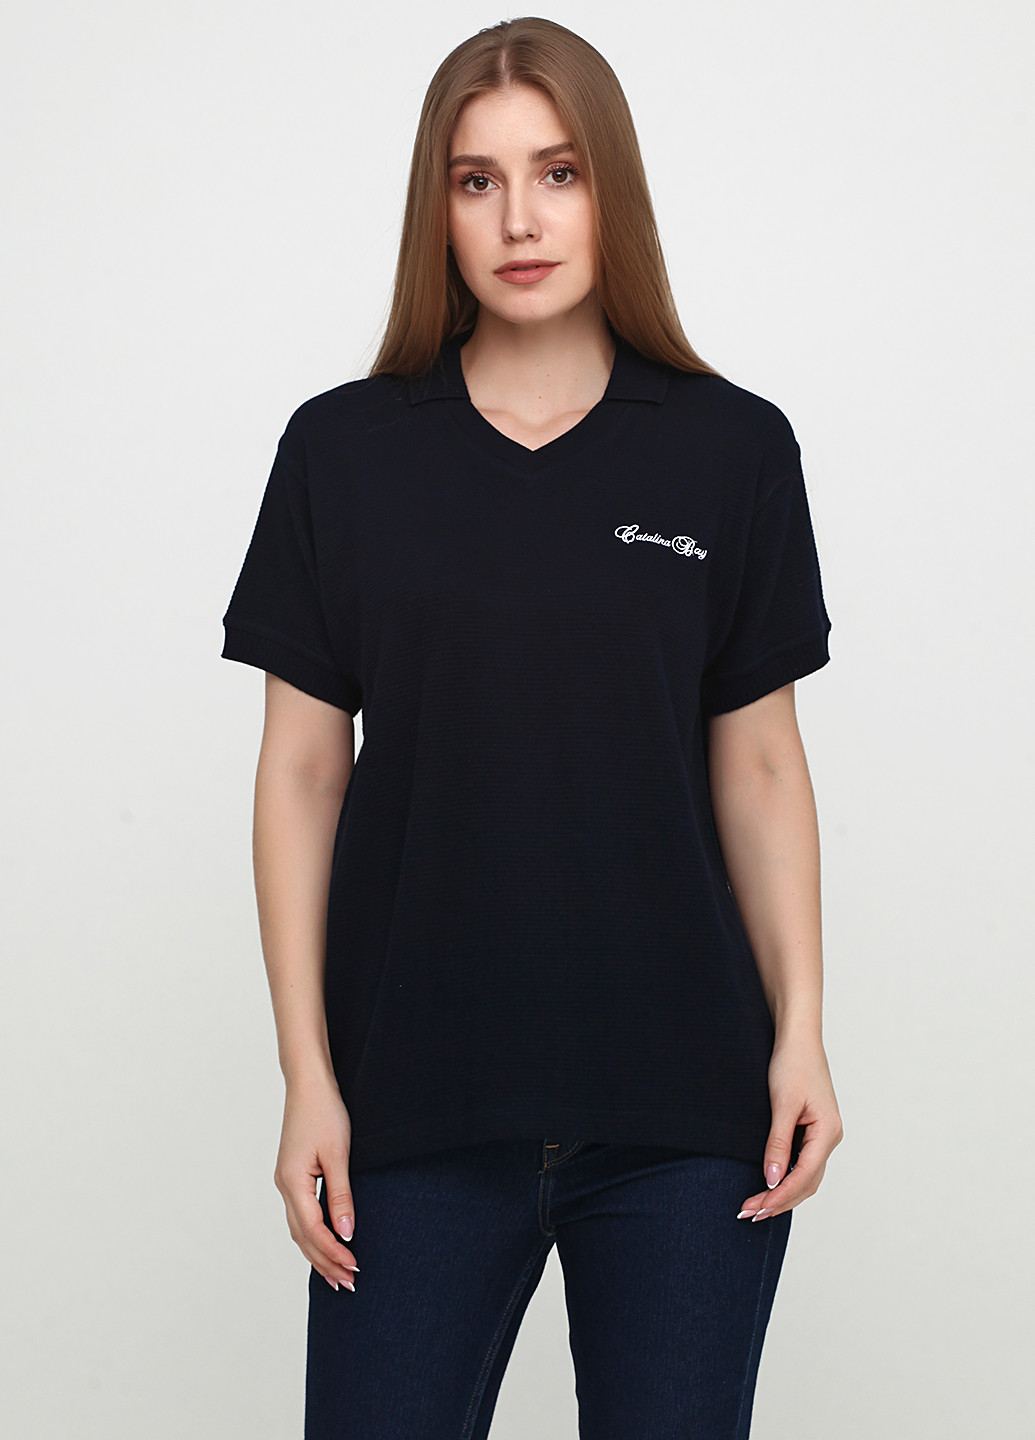 Темно-синяя женская футболка-поло Asos с надписью